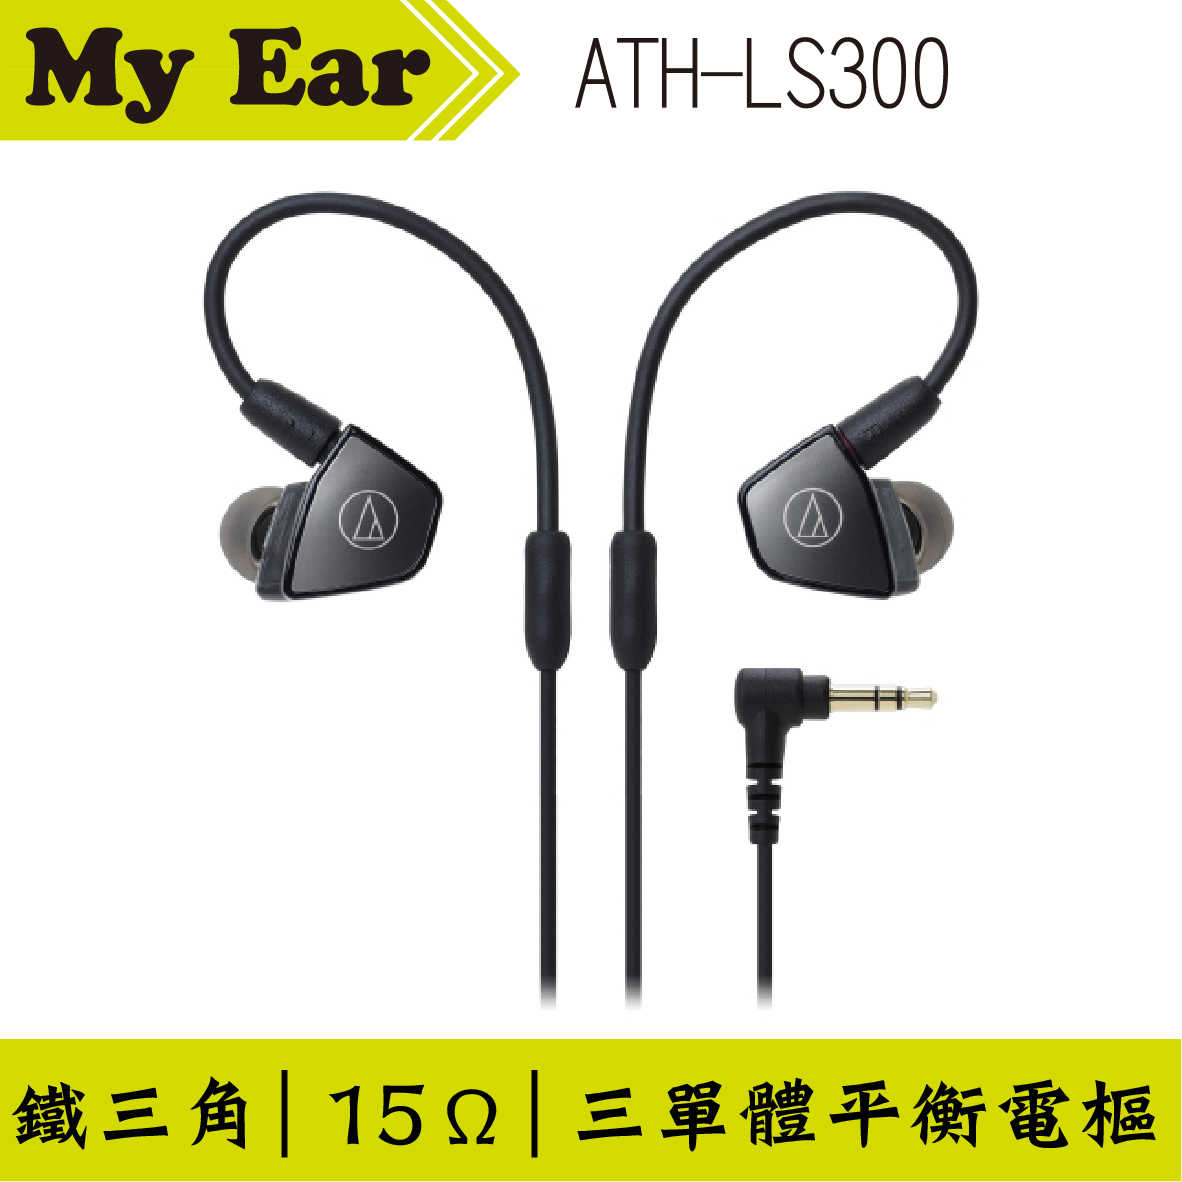 鐵三角 LS300 金屬複合導管 三單體 動鐵 耳道耳機 | My Ear 耳機專門店